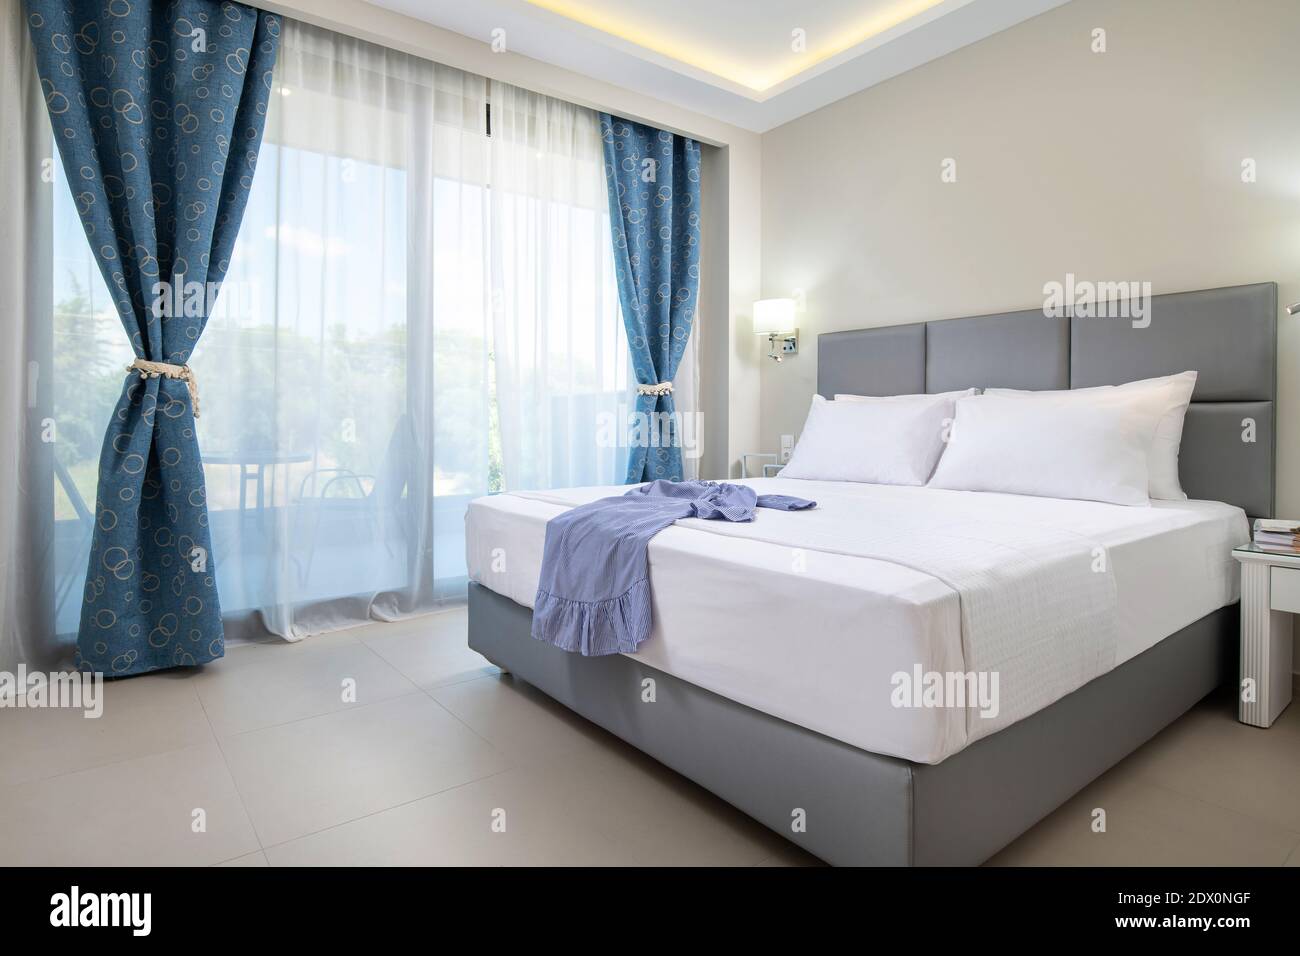 Interni dal design moderno di eleganti camere da letto con letto matrimoniale in tessuto grigio chiaro, biancheria da letto bianca e tende blu in stile classico appartamento dell'hotel Foto Stock